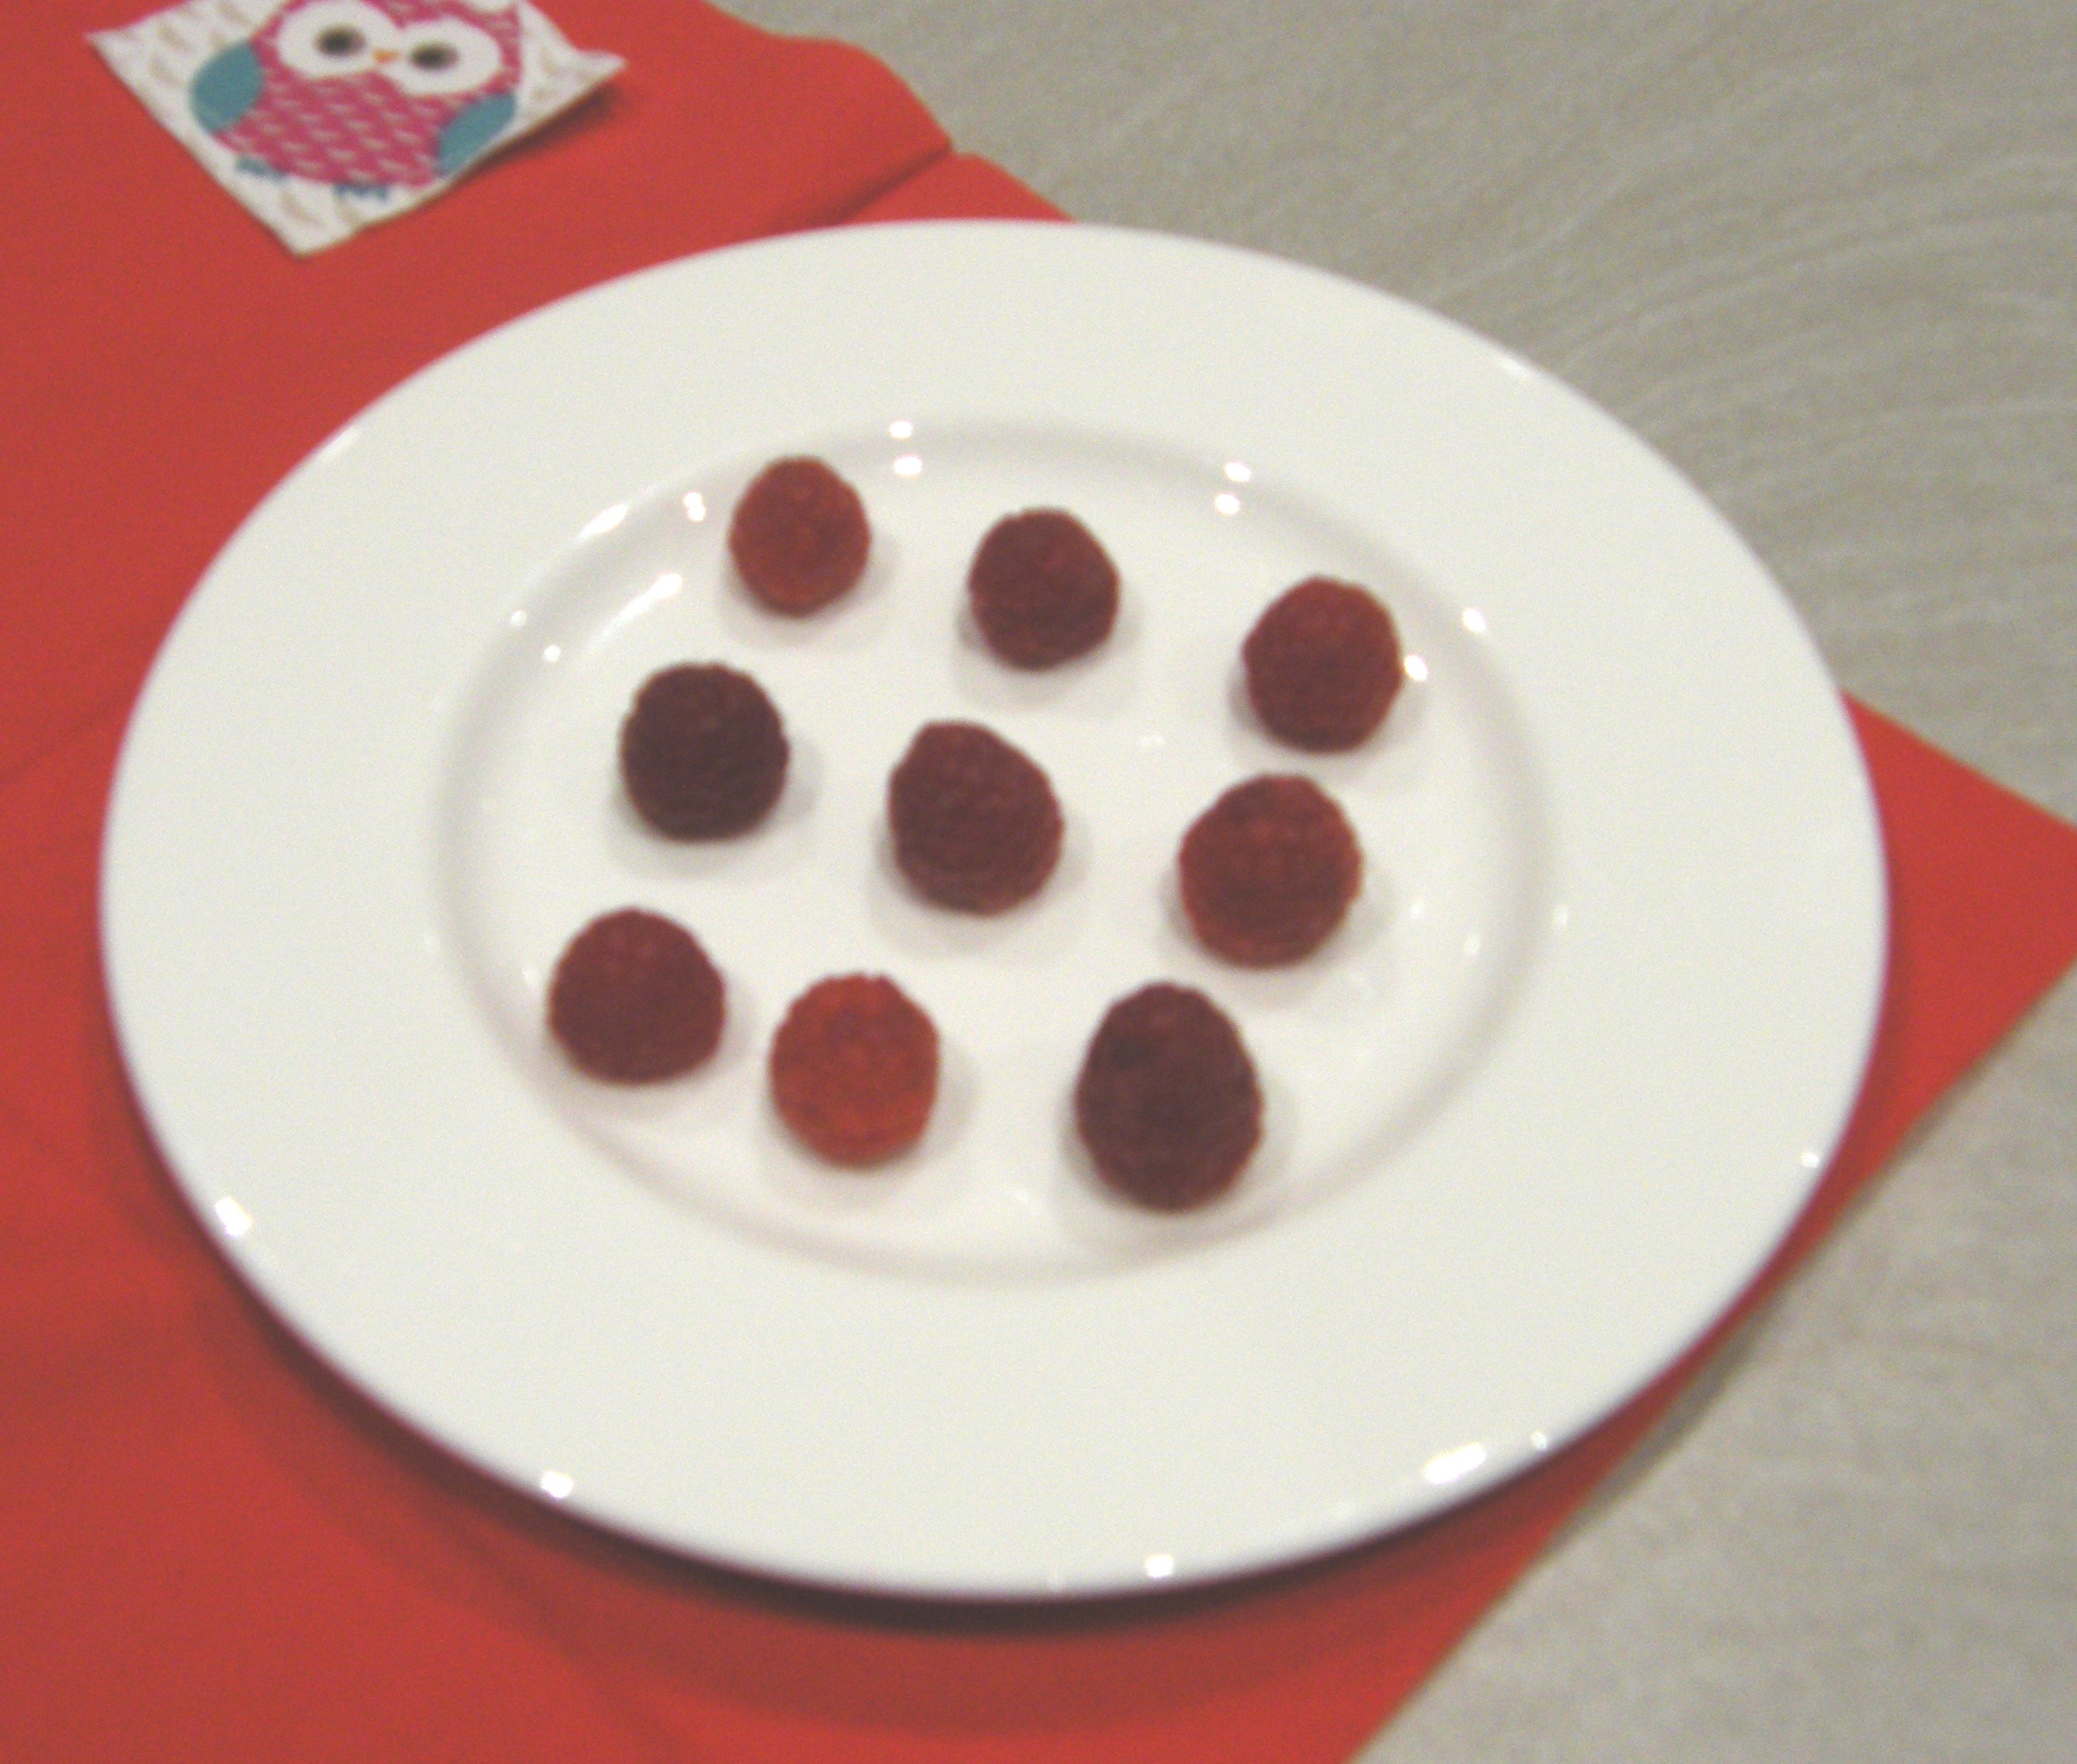 raspberries in square numbers